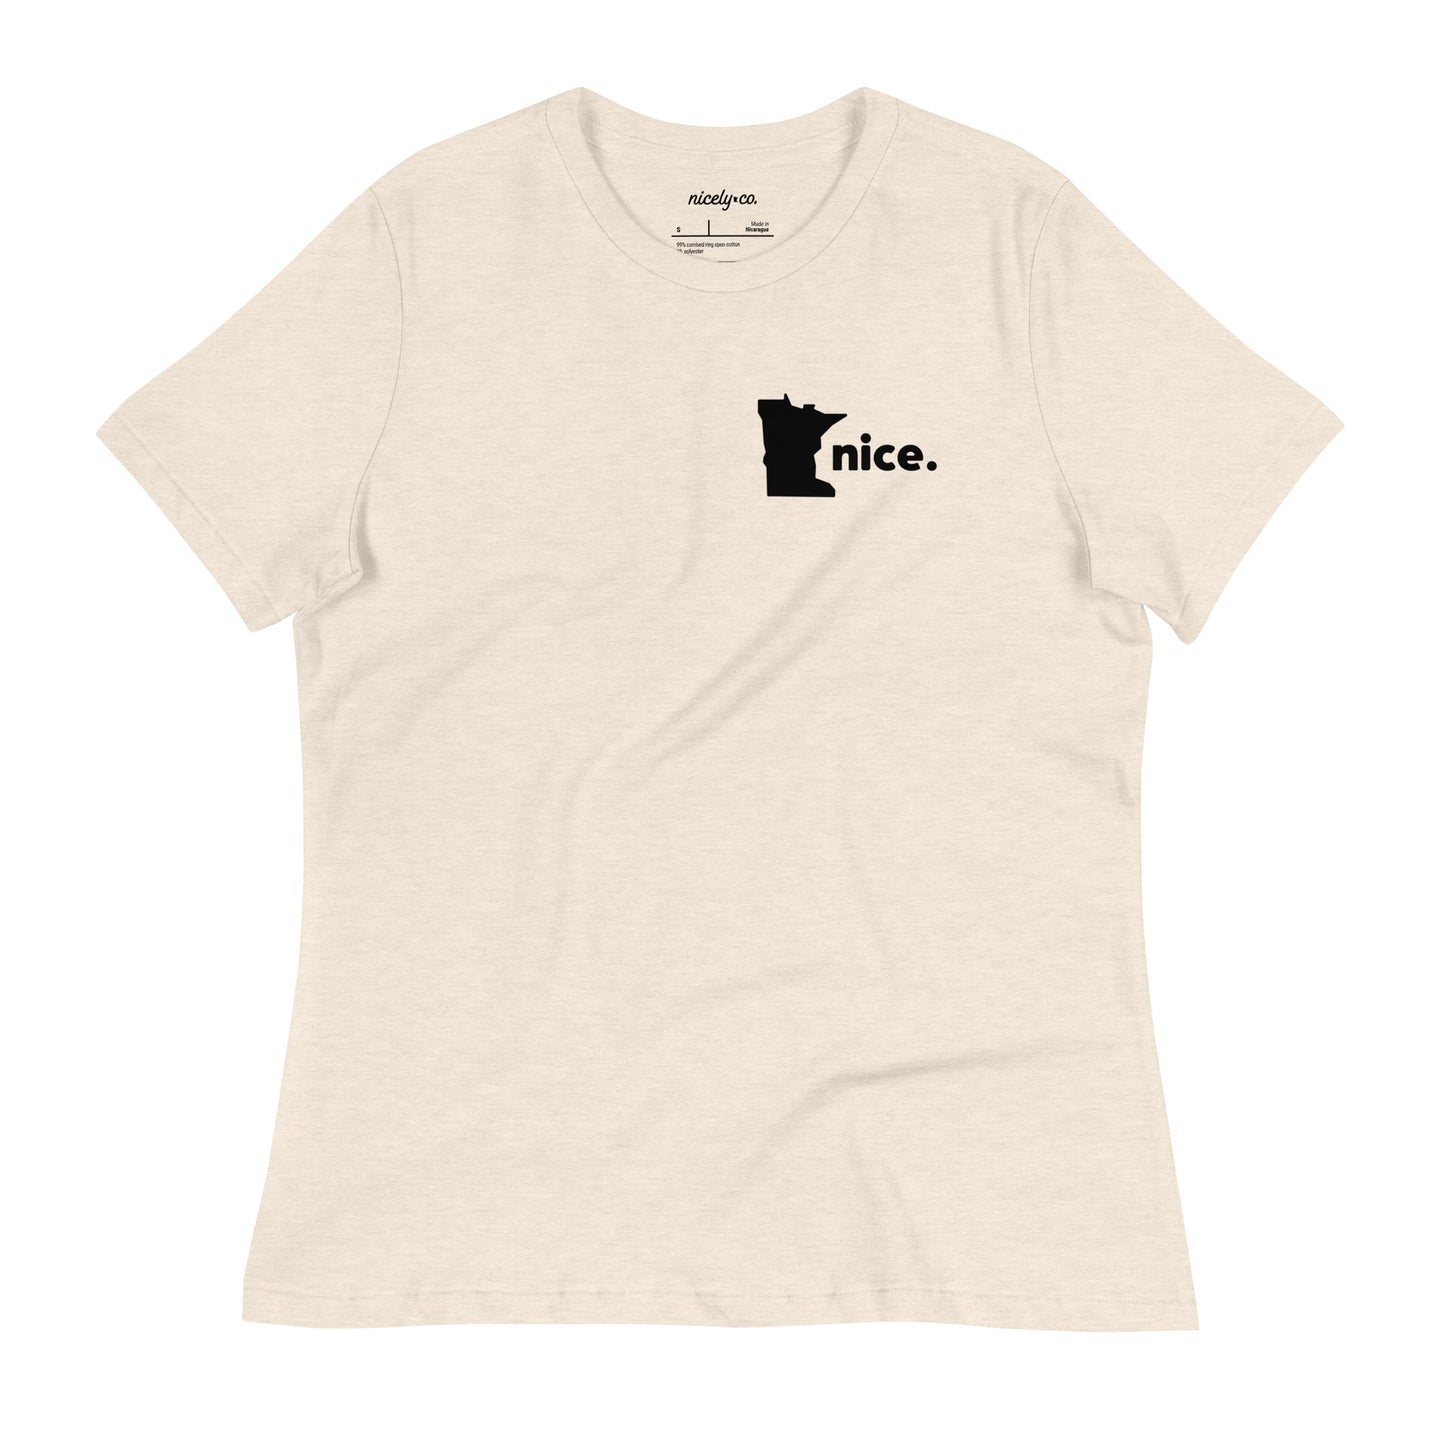 Minnesota Nice Women's Relaxed T-Shirt